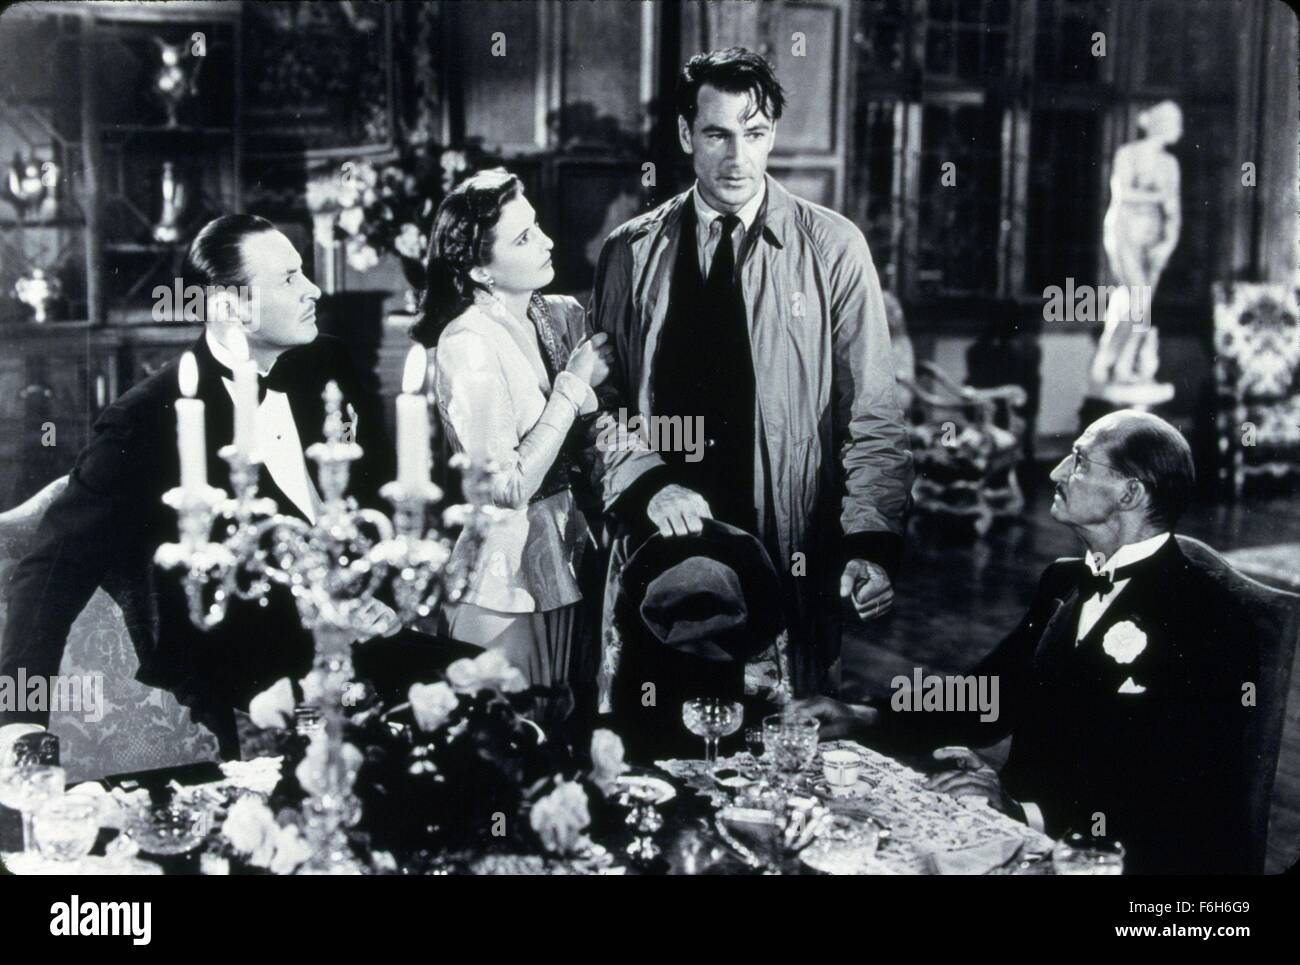 1941, le titre du film : Rencontrez JOHN DOE, Directeur : Frank Capra, Studio : WARNER, Photo : Frank Capra, Gary Cooper, théâtre, journalisme, POLITIQUE (corruption, intrigue/ROMANCE. (Crédit Image : SNAP) Banque D'Images